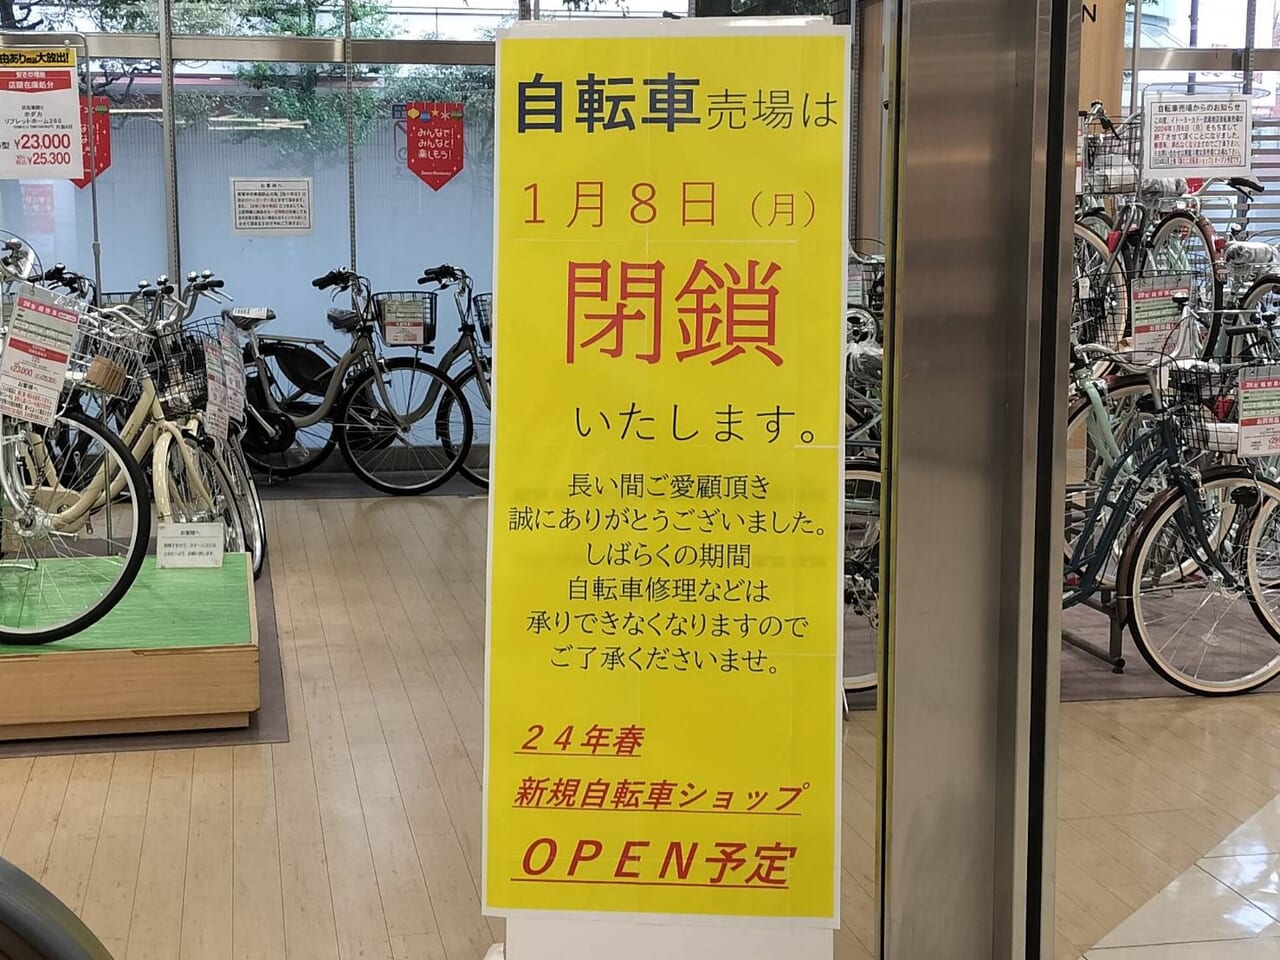 イトーヨーカドー武蔵境店自転車売り場サイクルガーデン閉鎖のお知らせ